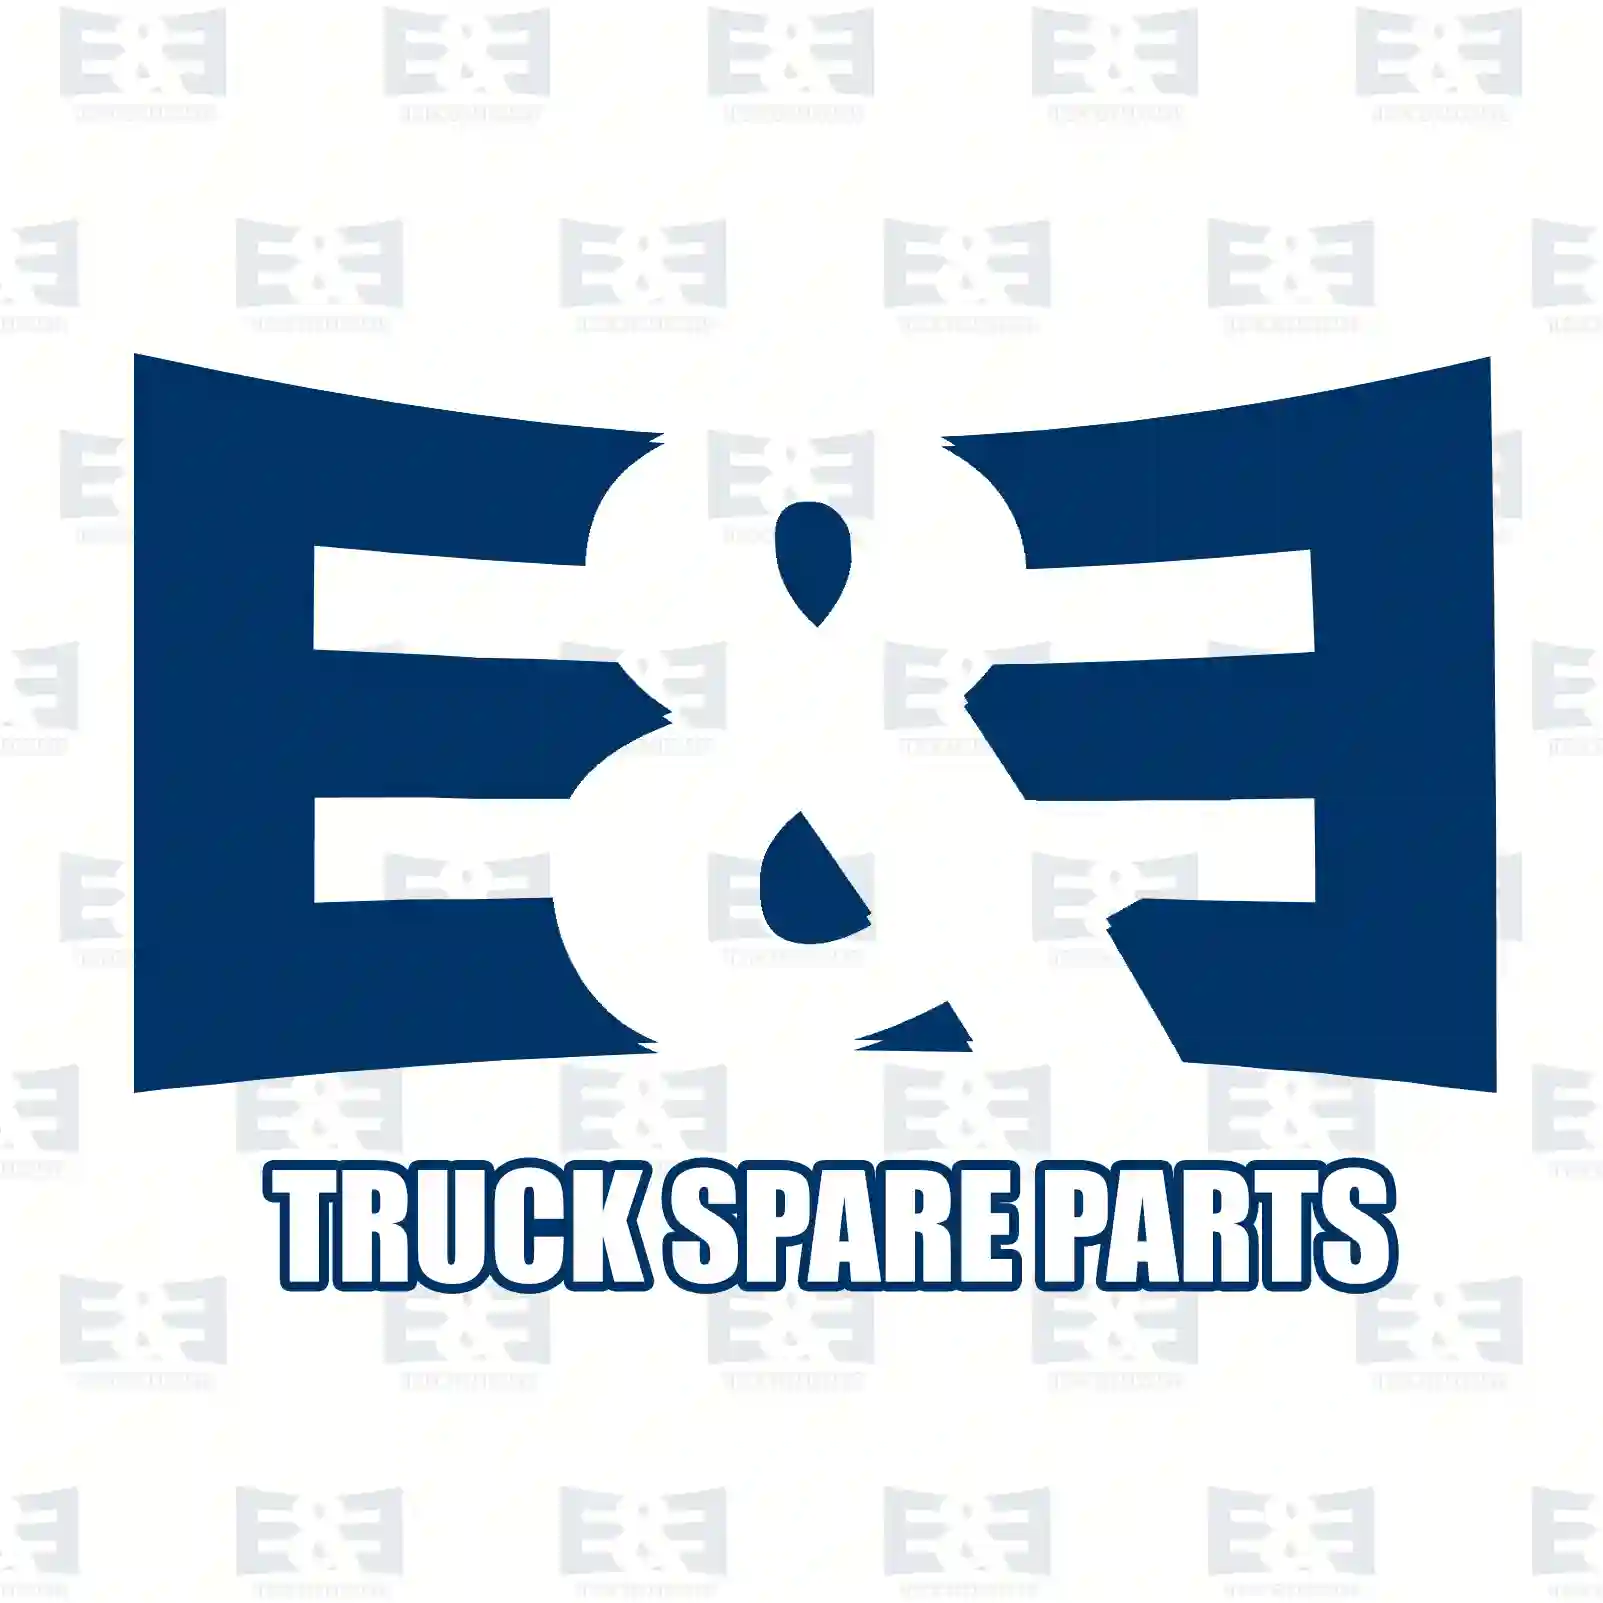 Repair kit, feed pump, 2E2286057, 0000910840S1, 1391897S, 1391897S1, 3094599S1, ZG10499-0008 ||  2E2286057 E&E Truck Spare Parts | Truck Spare Parts, Auotomotive Spare Parts Repair kit, feed pump, 2E2286057, 0000910840S1, 1391897S, 1391897S1, 3094599S1, ZG10499-0008 ||  2E2286057 E&E Truck Spare Parts | Truck Spare Parts, Auotomotive Spare Parts